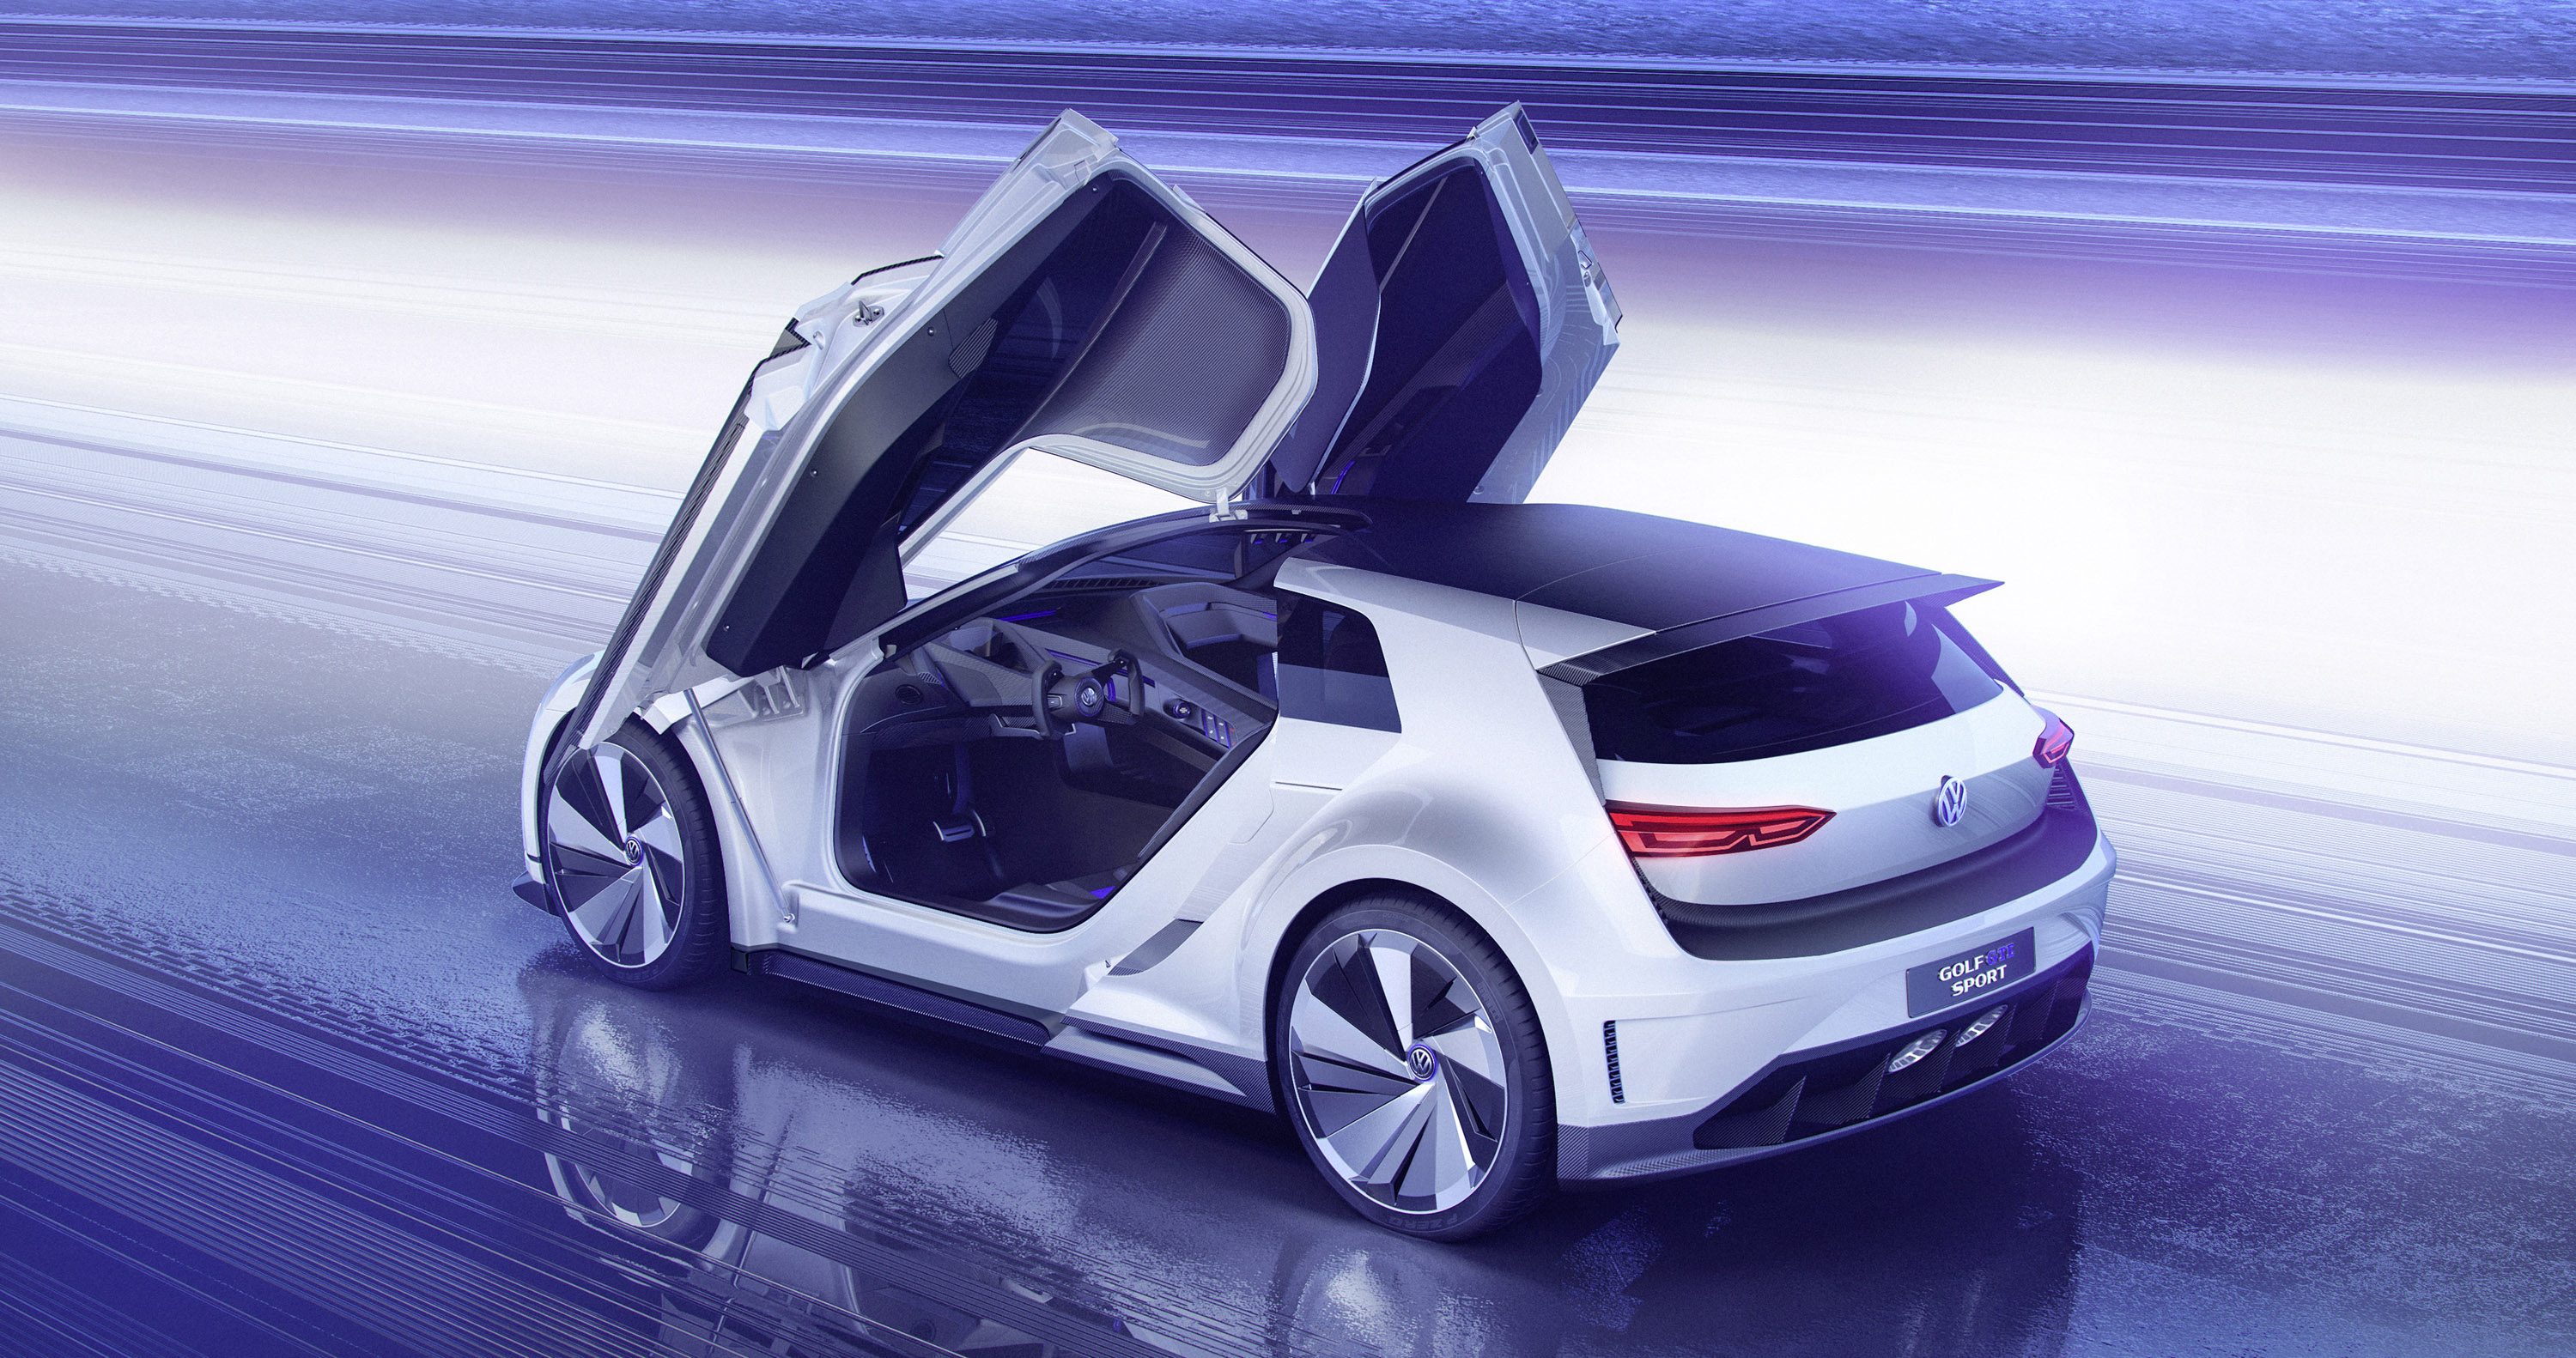 2015 Volkswagen Golf GTE Sport Concept